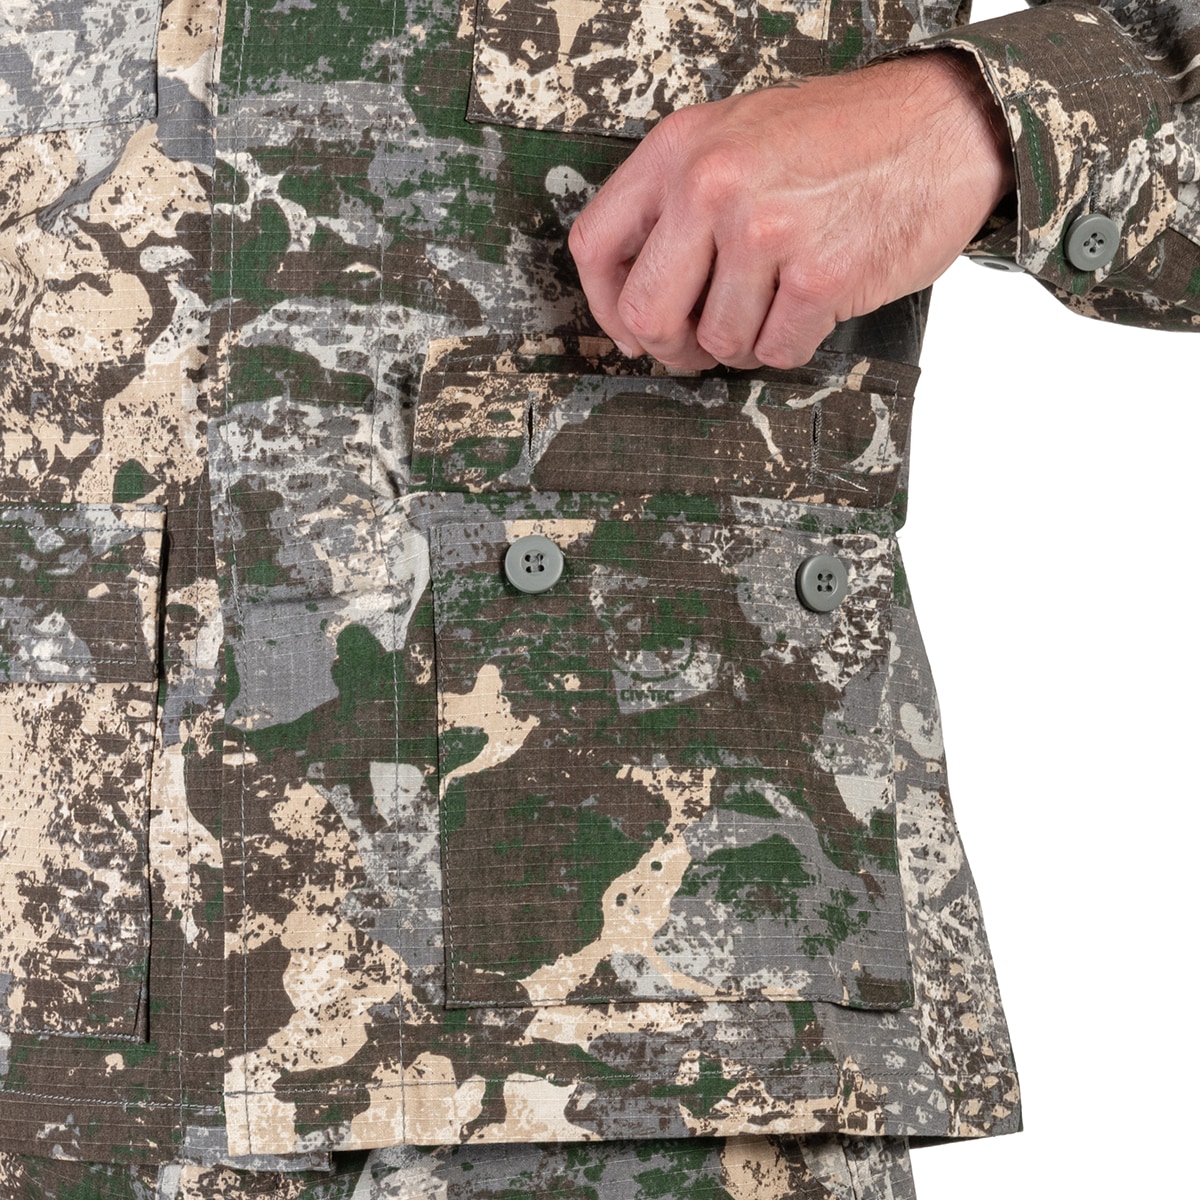 Bluza wojskowa Mil-Tec BDU Rip-Stop - Phantomleaf WASP I Z1B